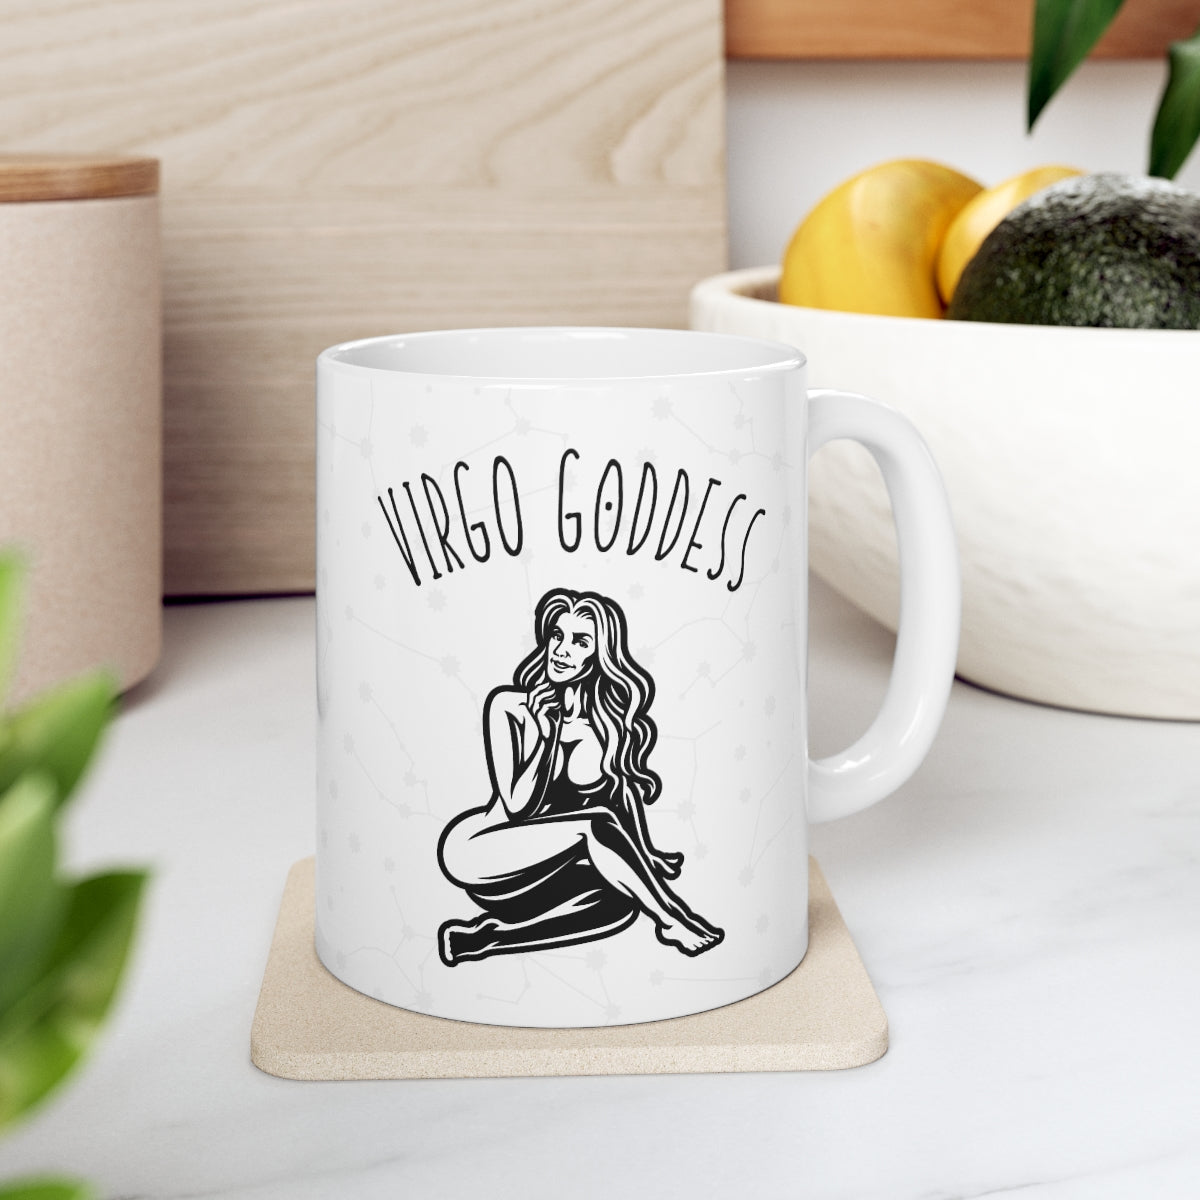 Virgo Goddess Astrology Mug 7